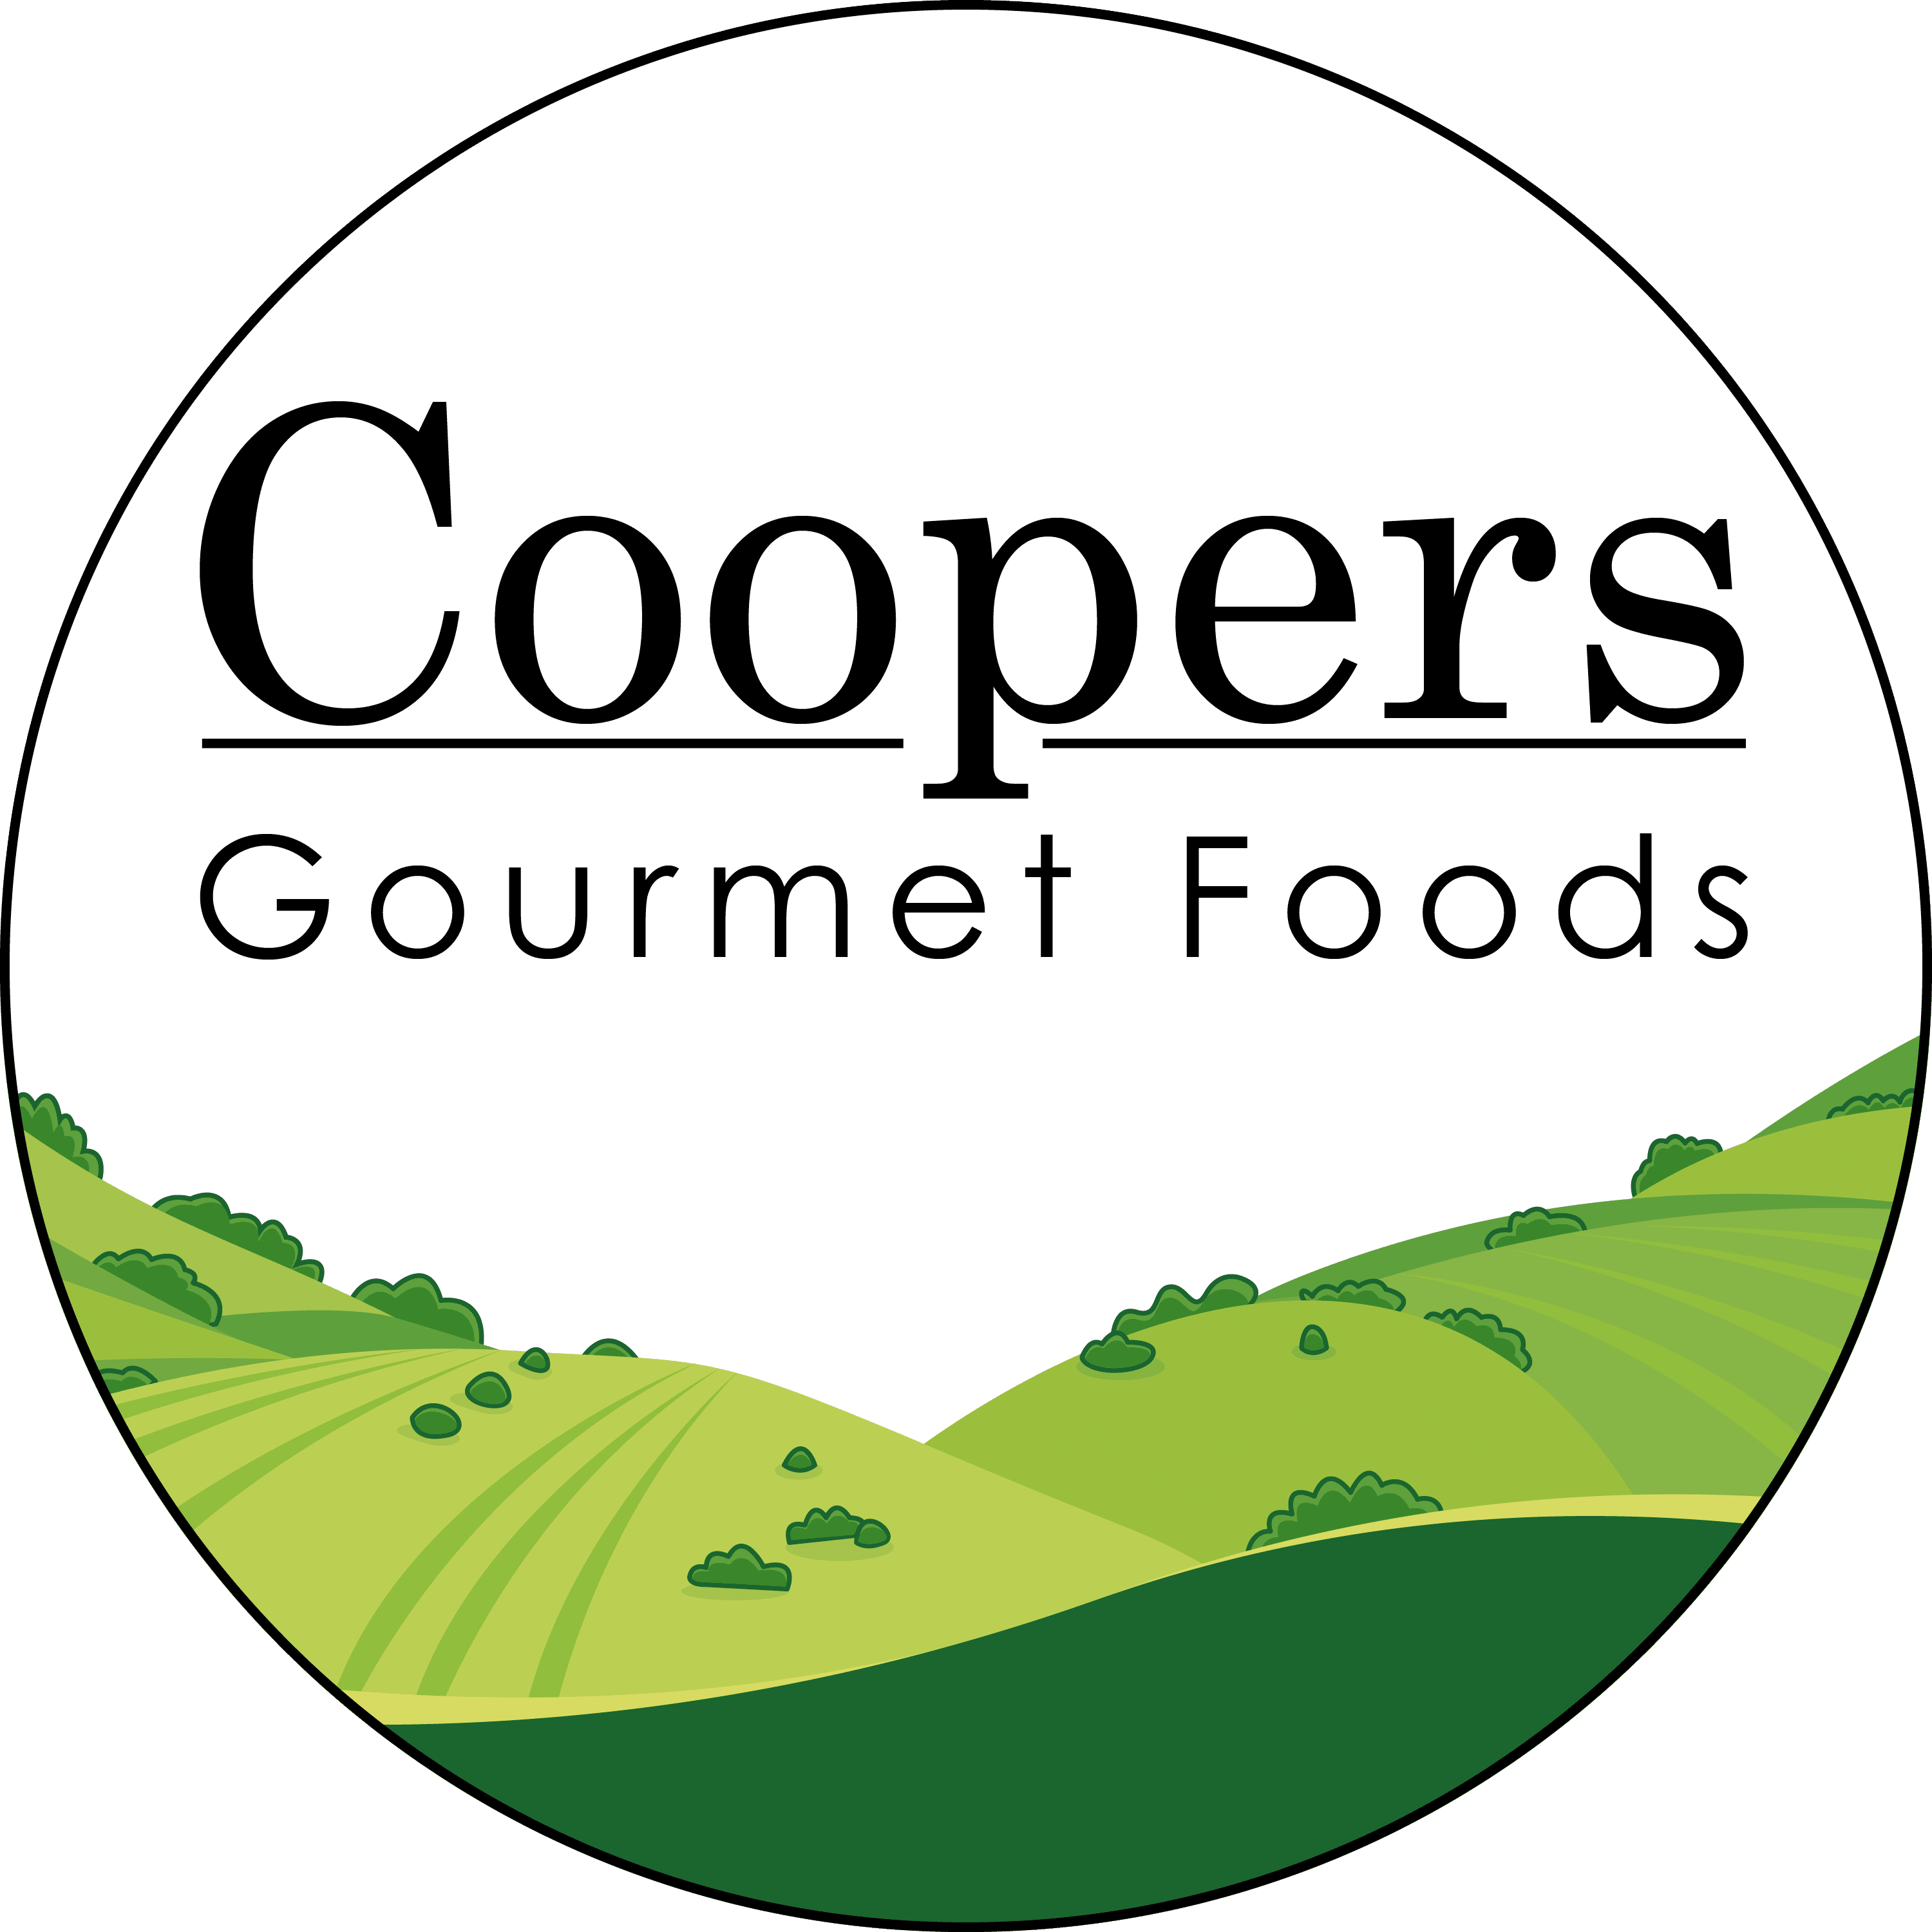 Coopers Gourmet Foods